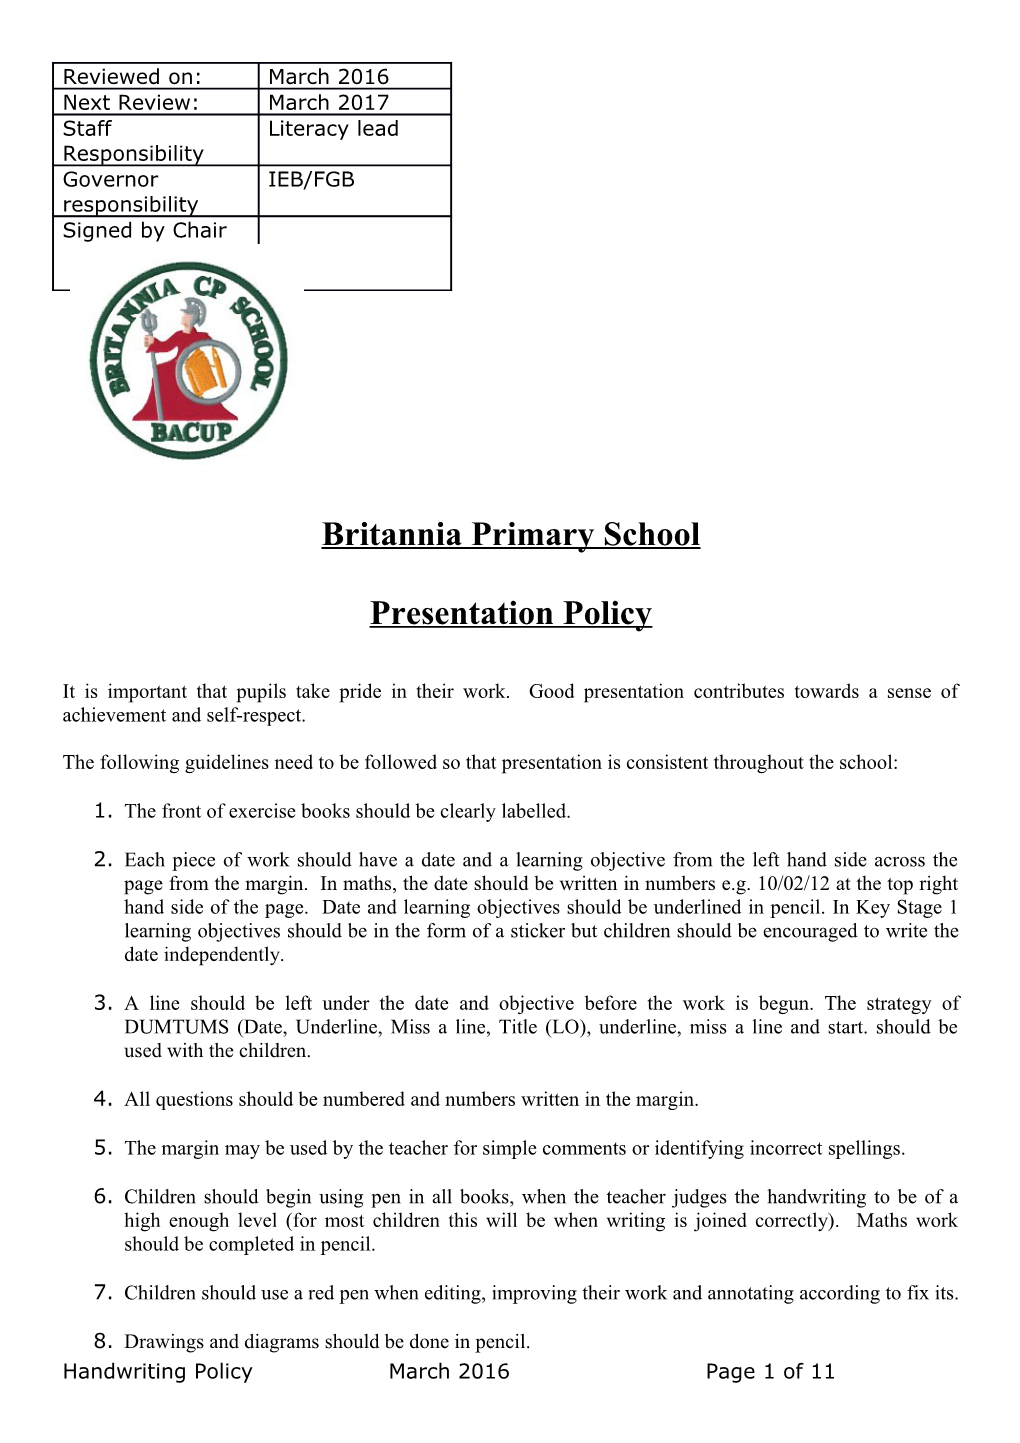 Britannia Primary School